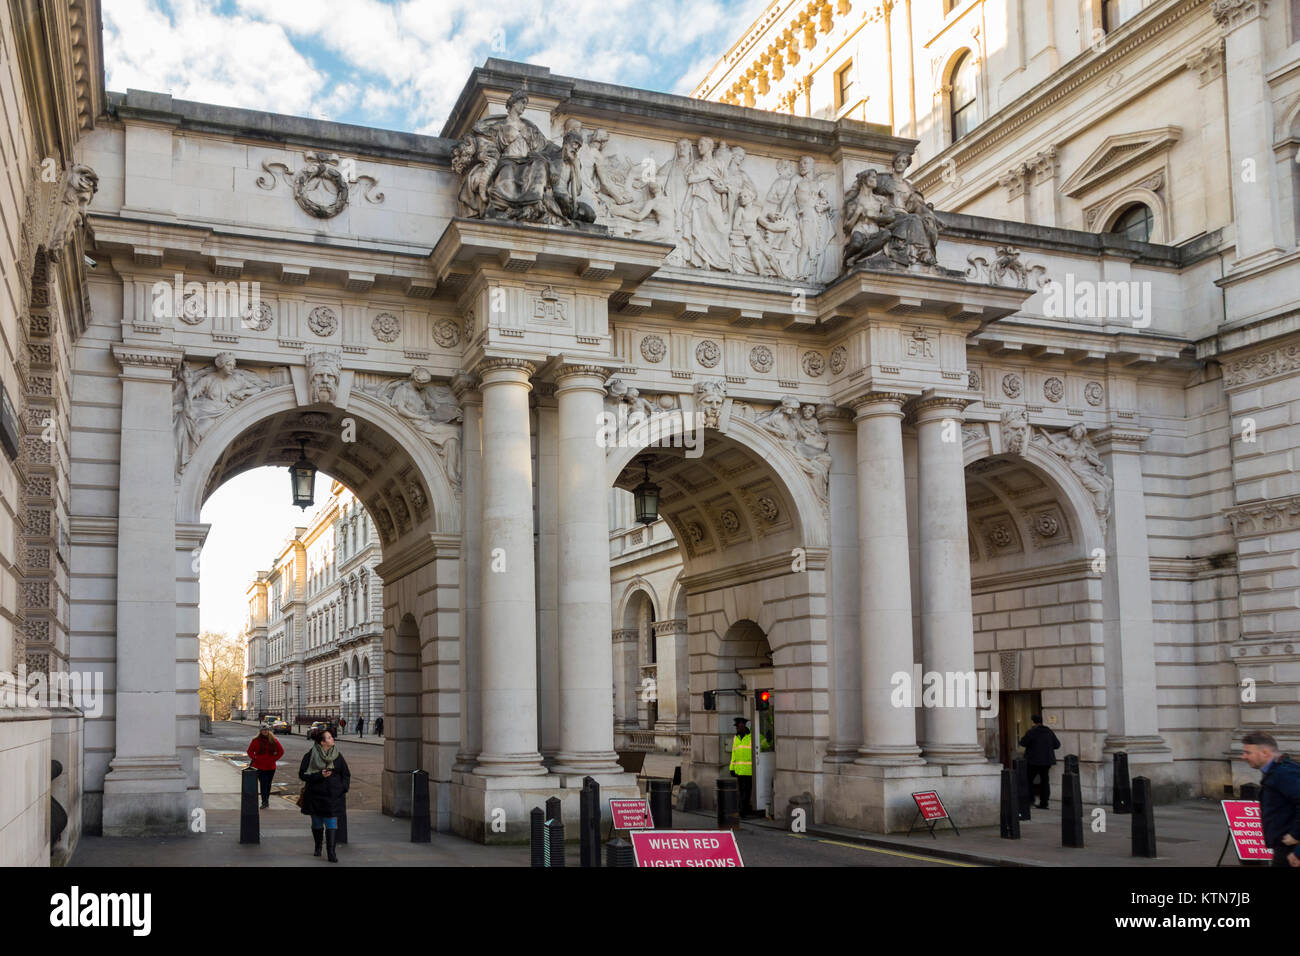 Arco sobre Rey Charles Street por el arquitecto J. M. Brydon con escultores Pablo Raphael Montford & William Silver Frith vistos desde Whitehall, Londres, Reino Unido. Foto de stock